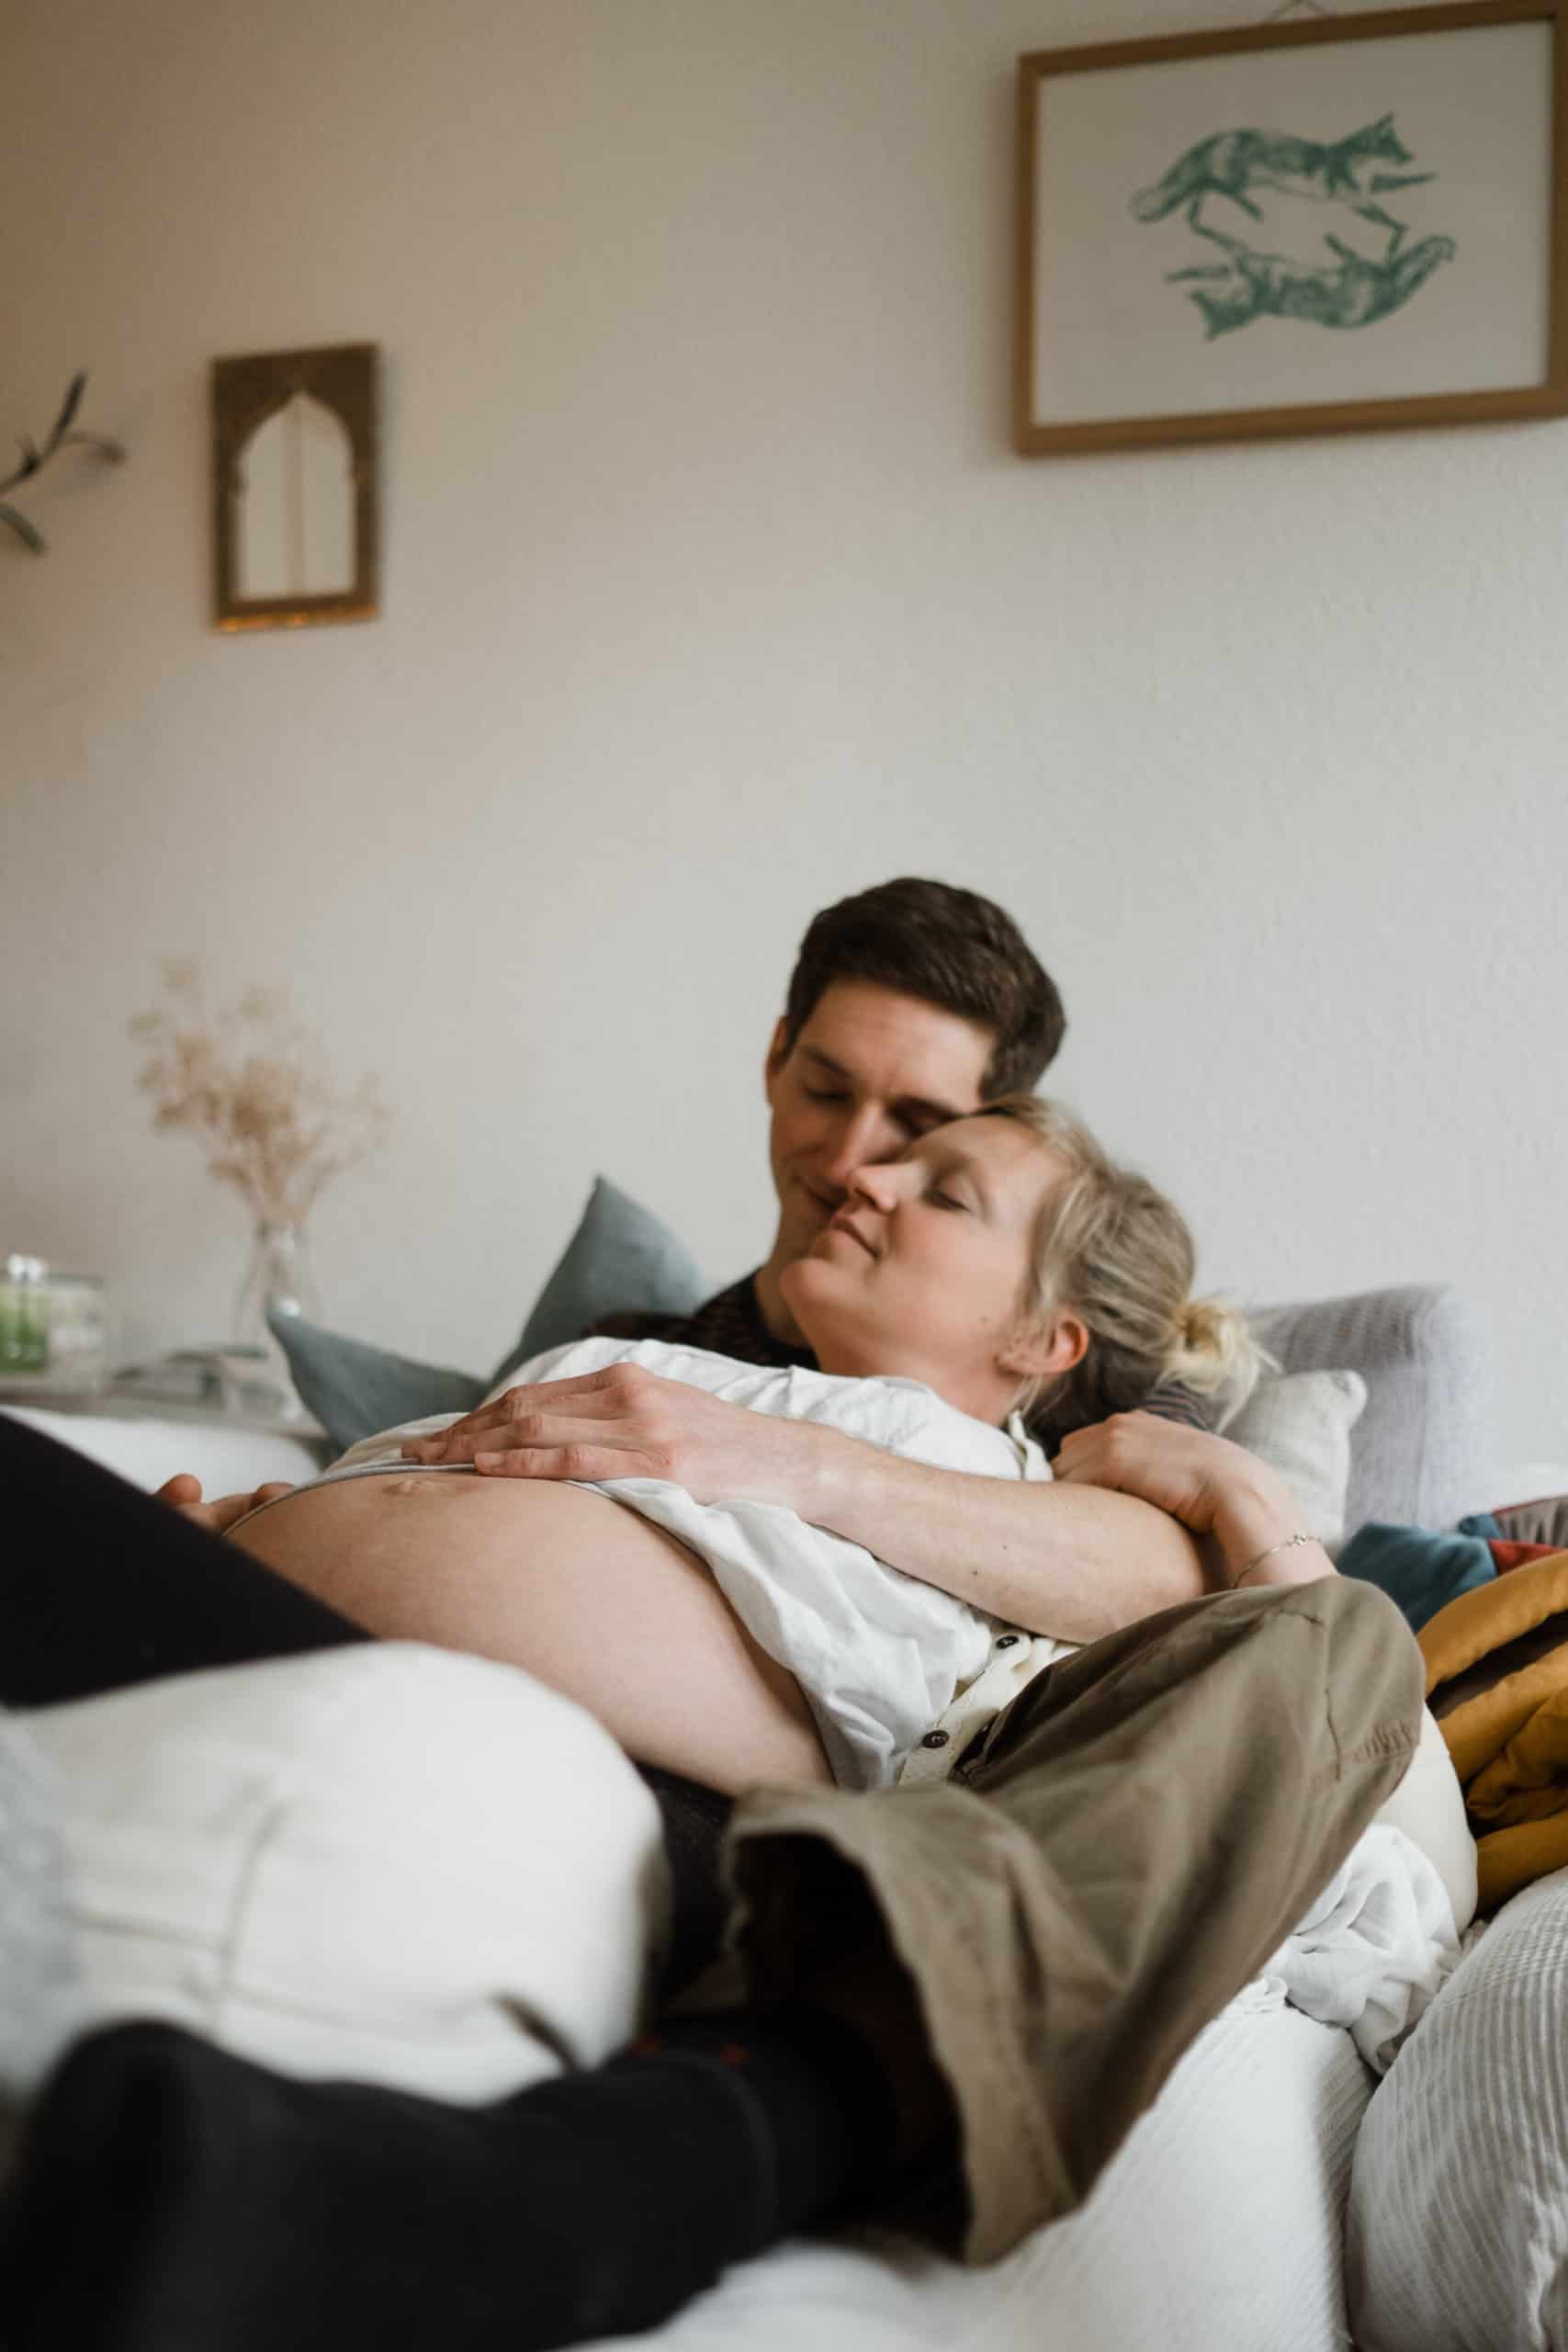 ein Mann und eine Frau liegen auf einem Sofa in einem Wohnzimmer, die Frau ist schwanger, sie liegt in den Armen des Mannes, beide haben geschlossene Augen